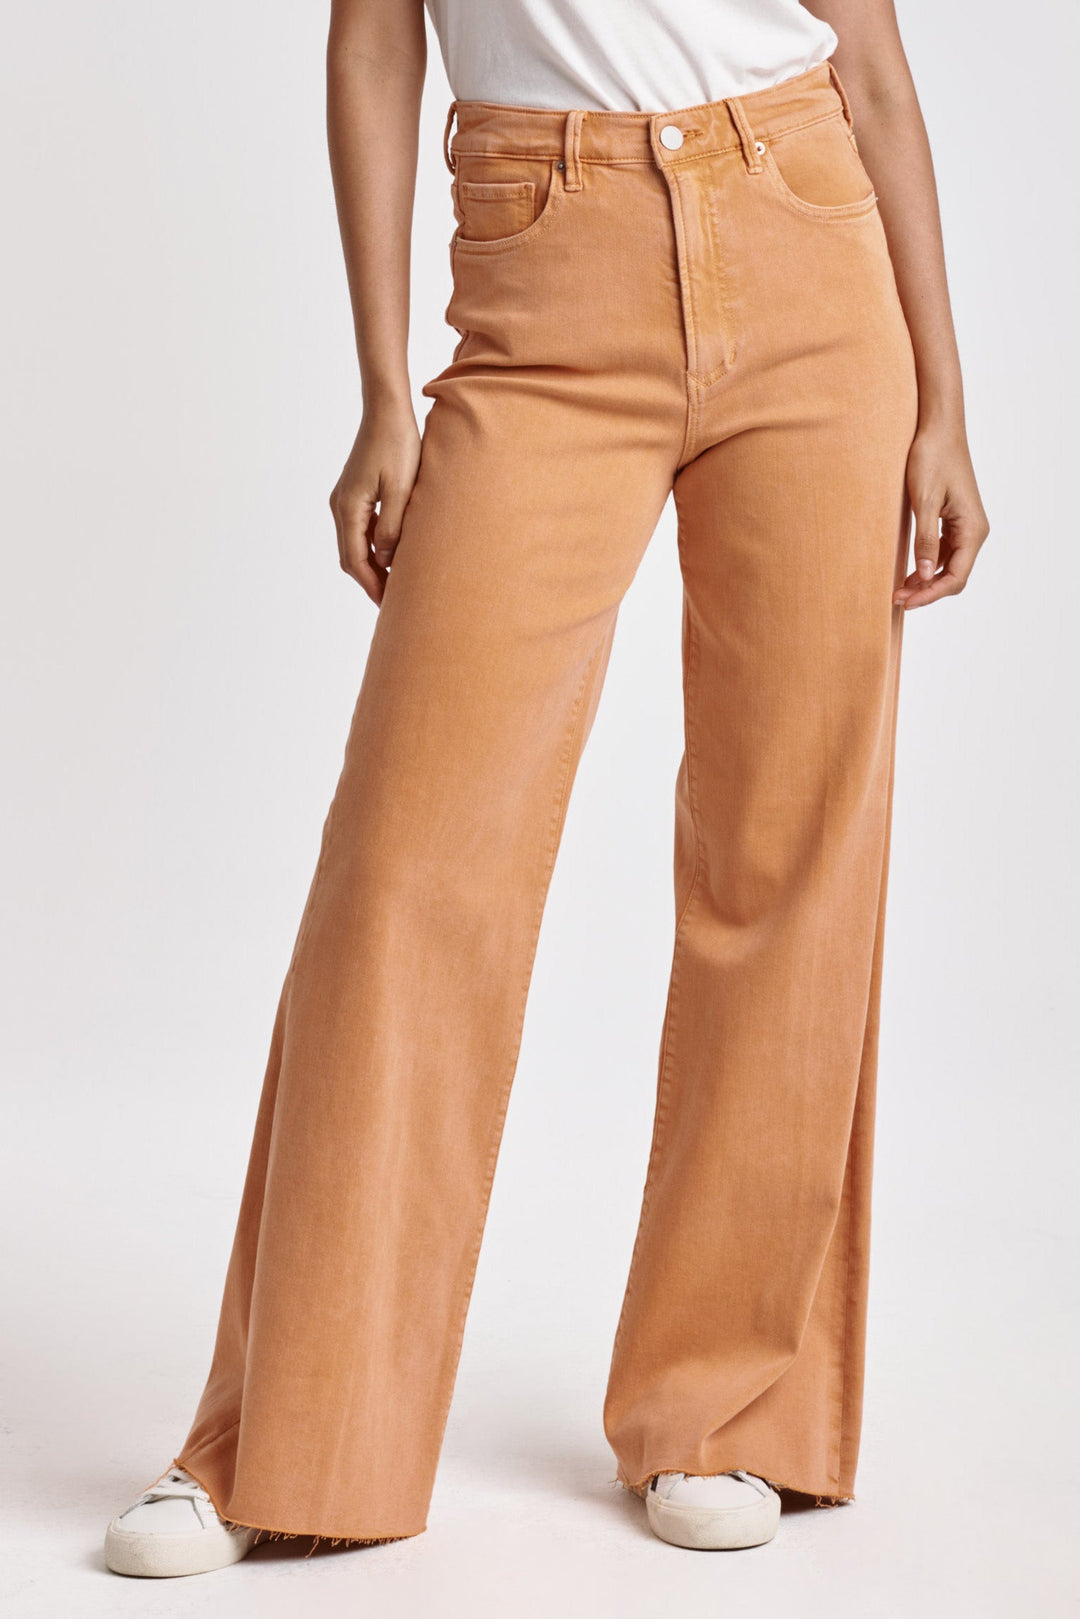 fiona-super-high-rise-wide-leg-jeans-apricot-crush